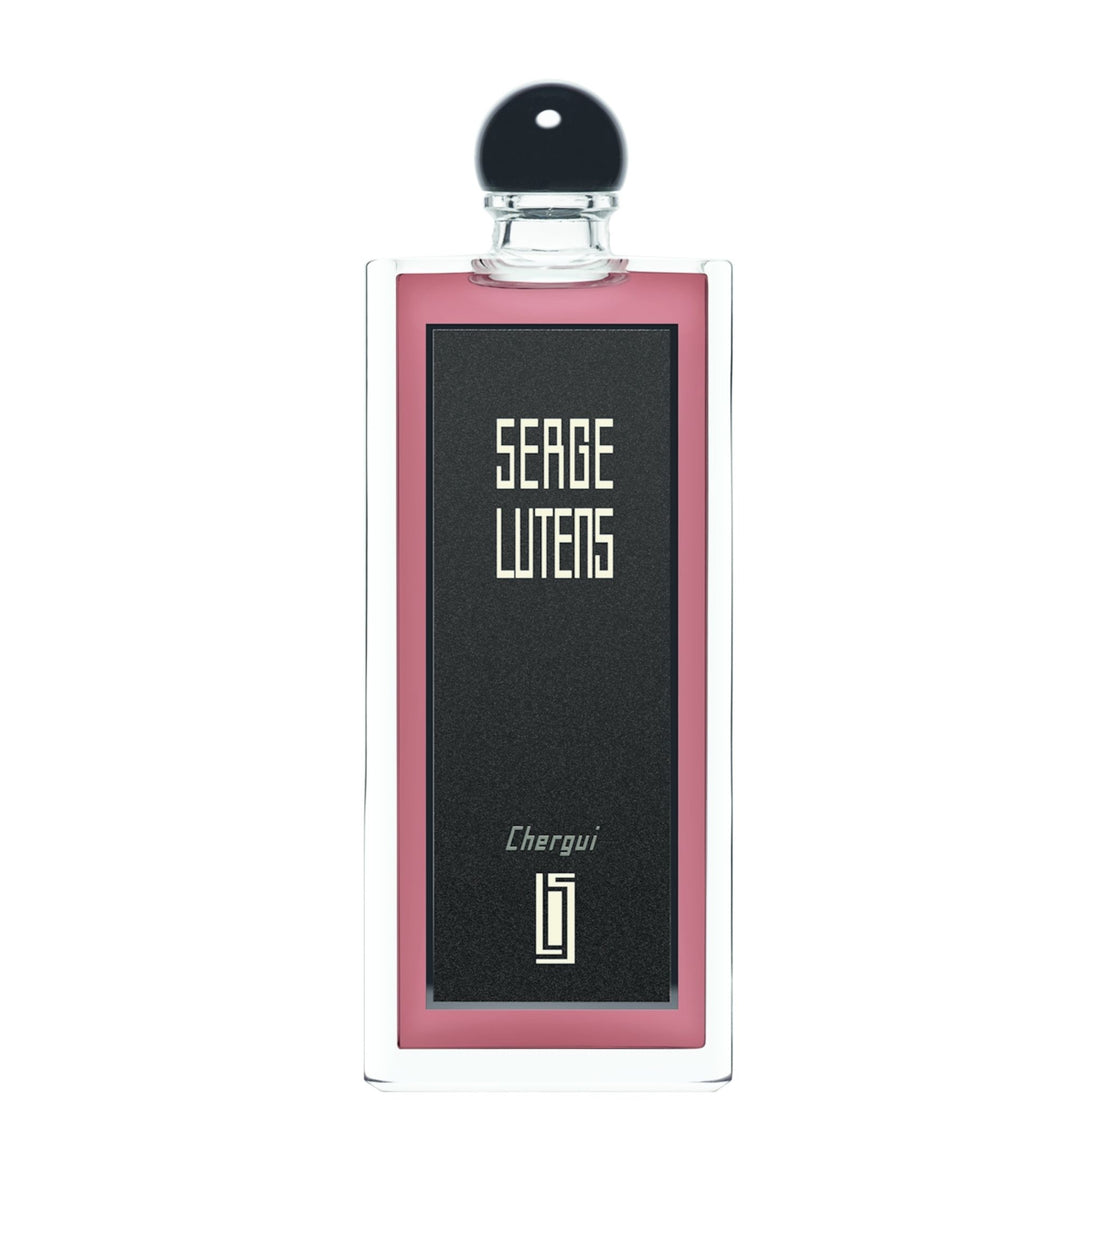 Serge Lutens Chergui Eau De Parfum Fragrance Samples